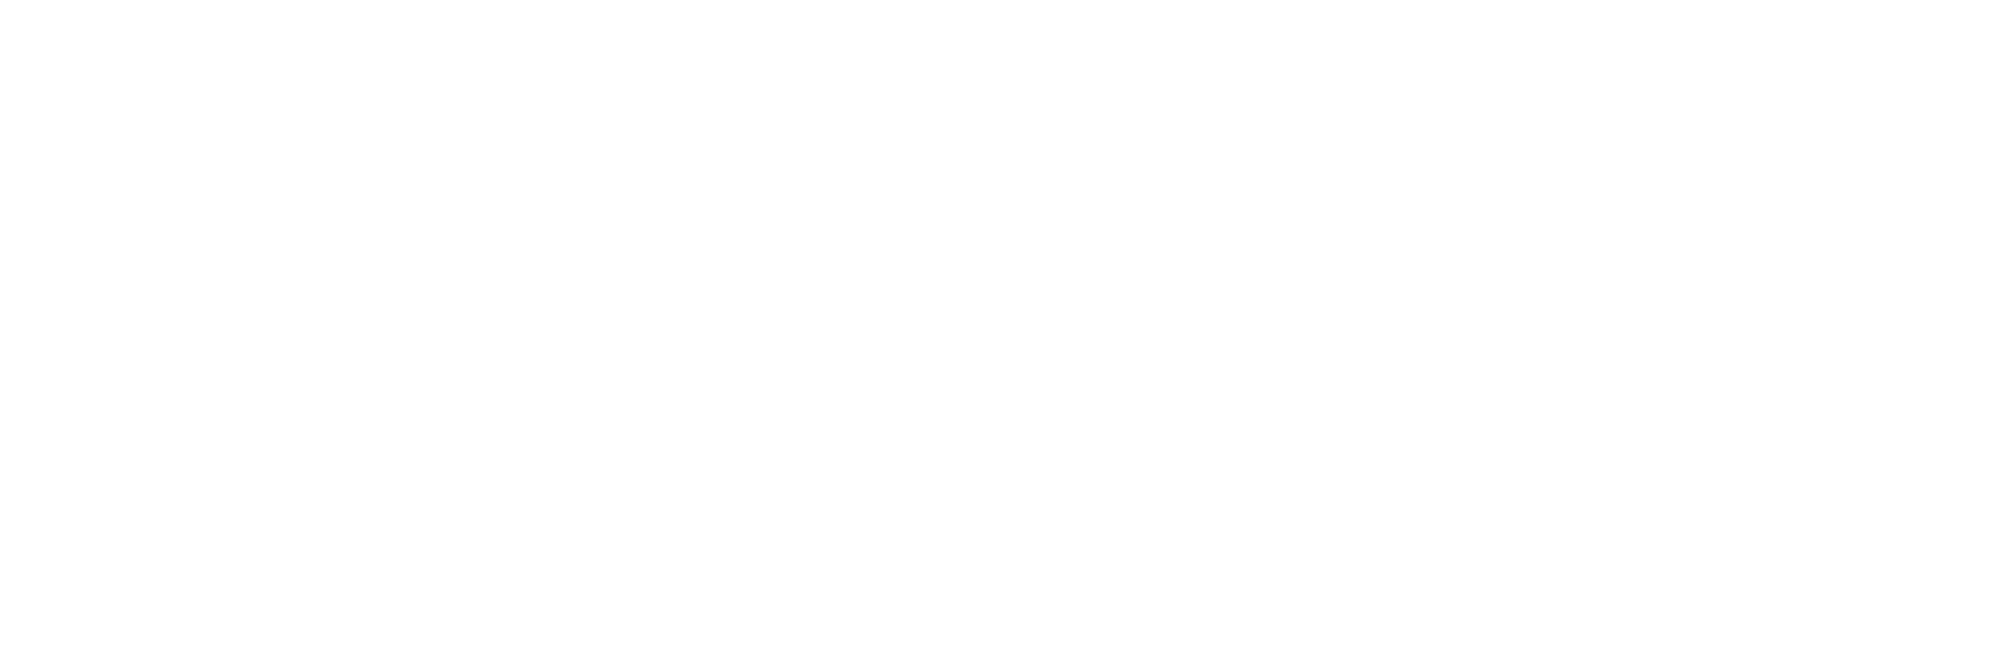 Gabriel - Preto